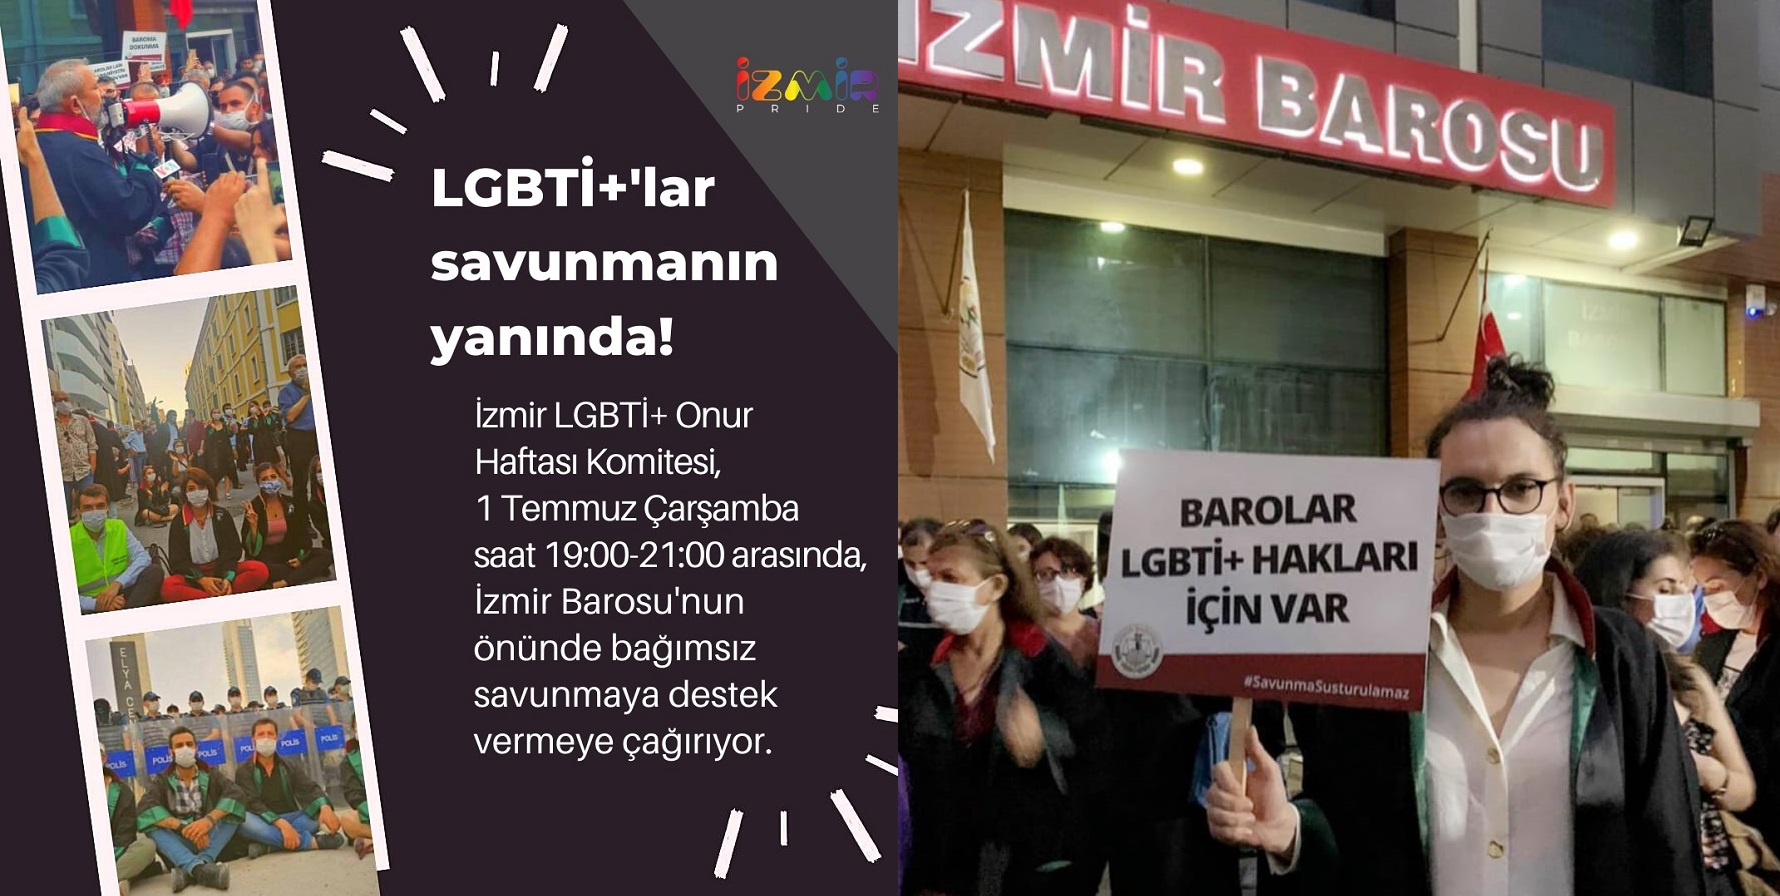 İzmir Pride Komitesi, bağımsız savunmaya desteğe çağırıyor | Kaos GL - LGBTİ+ Haber Portalı